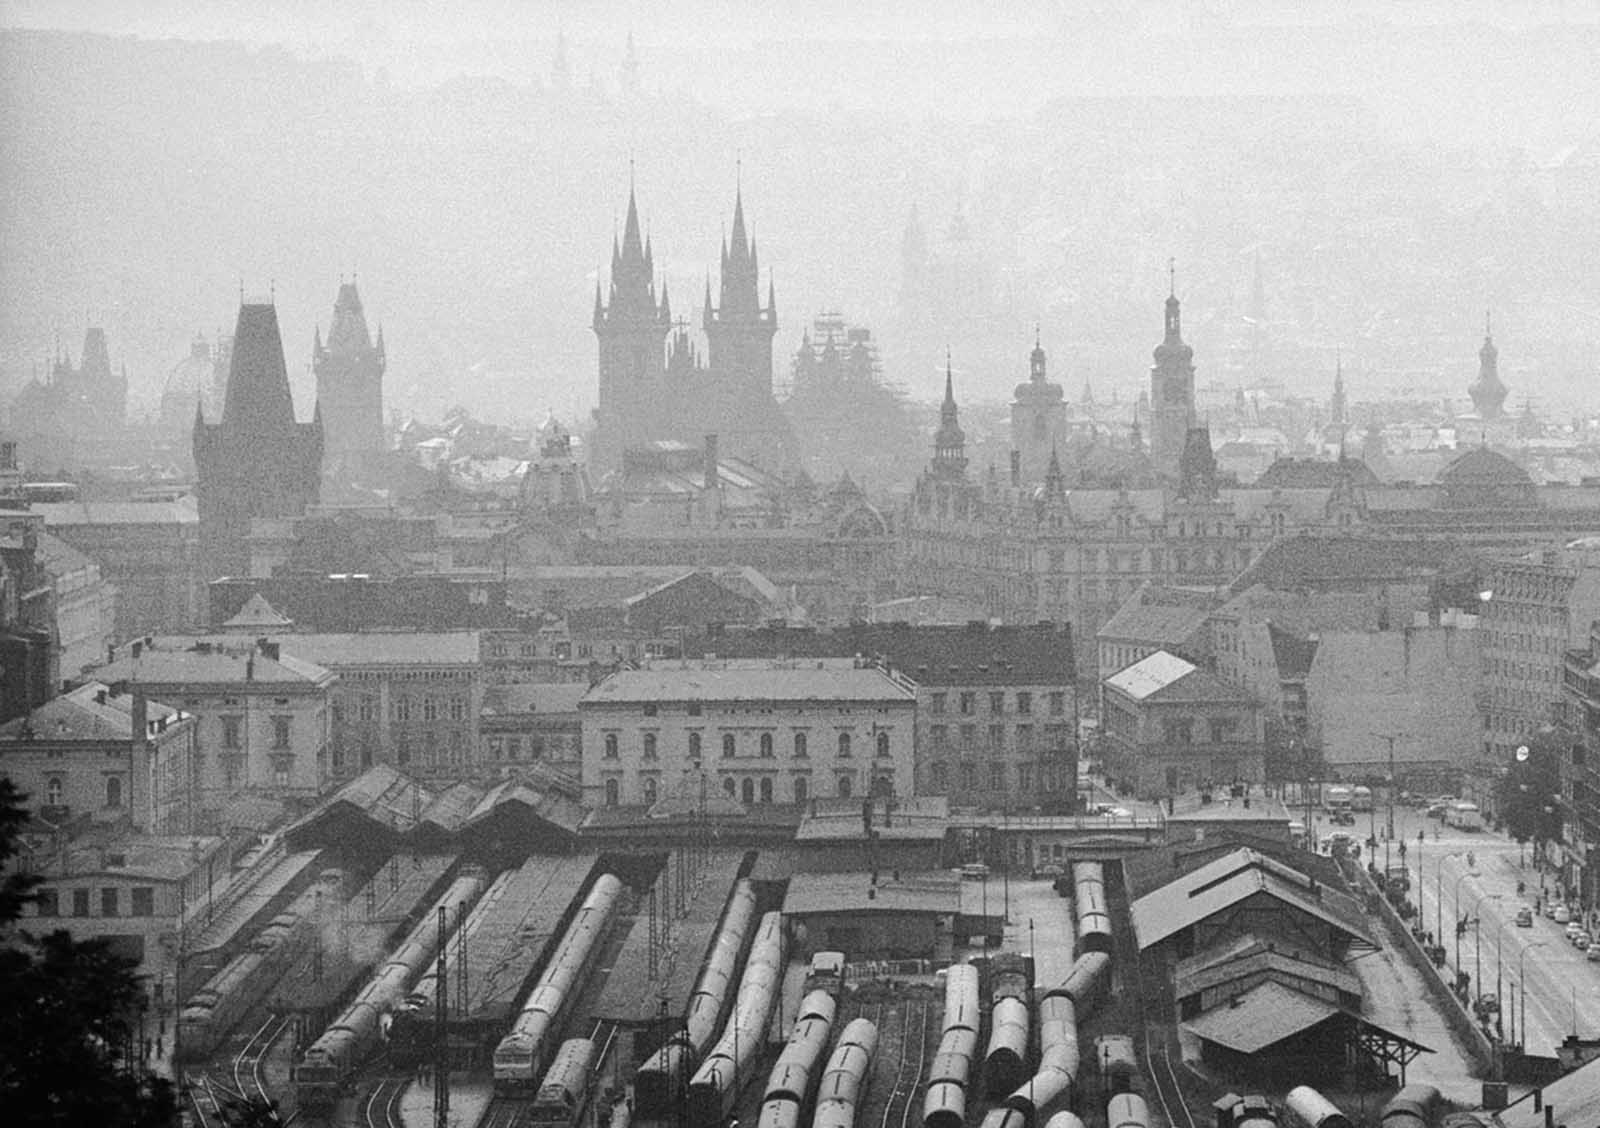 Quand les Soviétiques sont arrivés à l'écrasement du Printemps de Prague, 1968